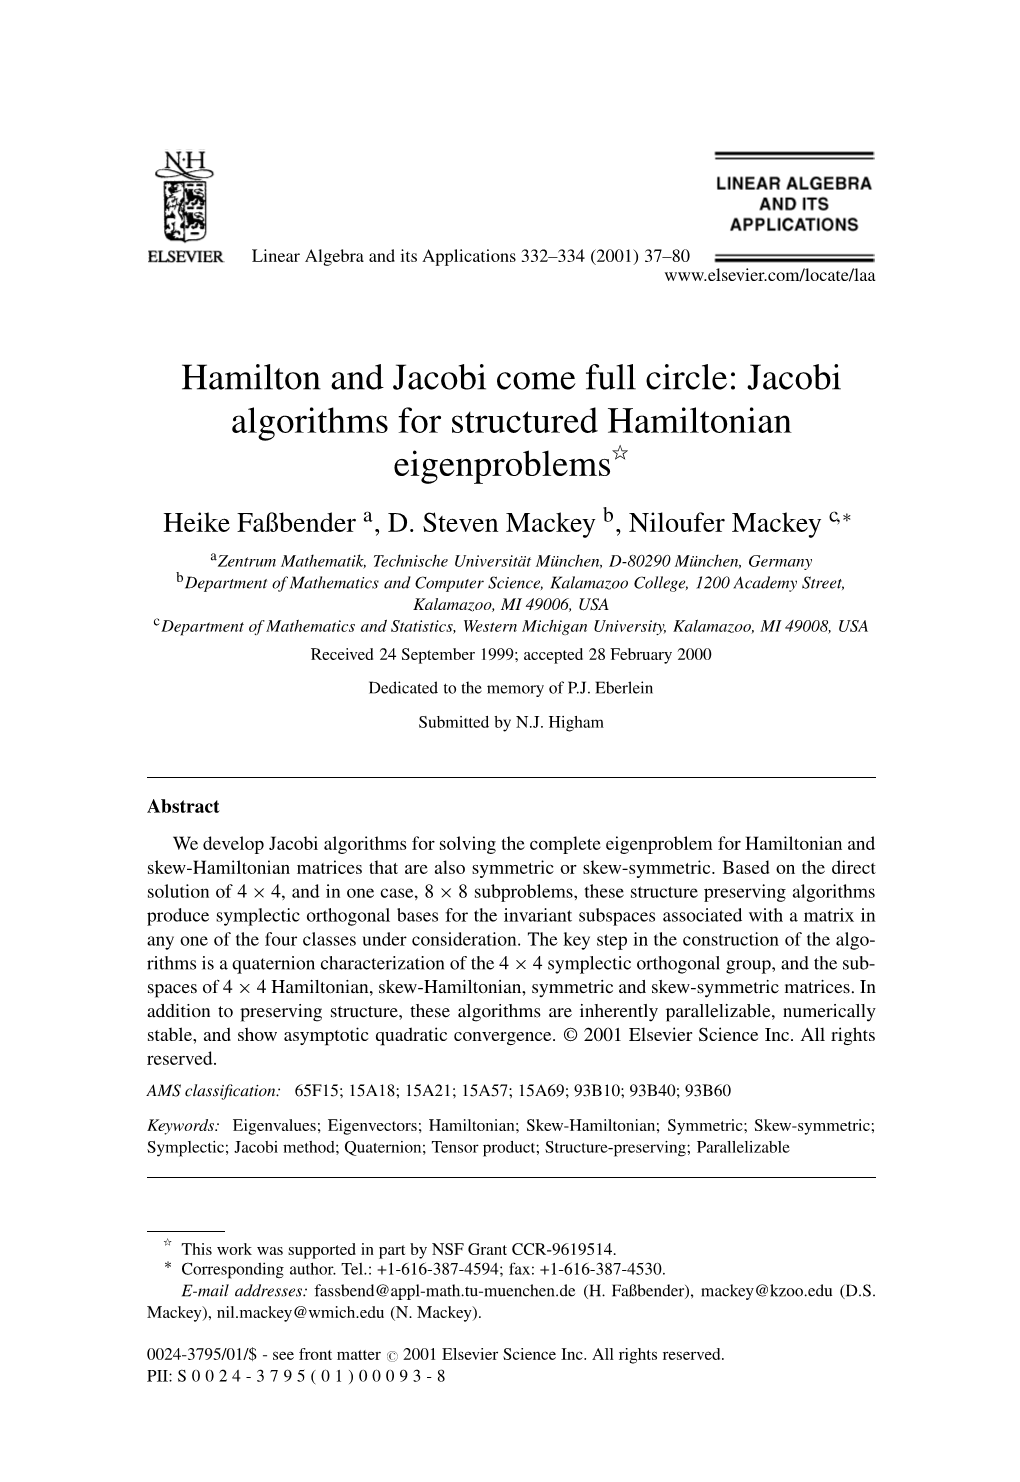 Jacobi Algorithms for Structured Hamiltonian Eigenproblems